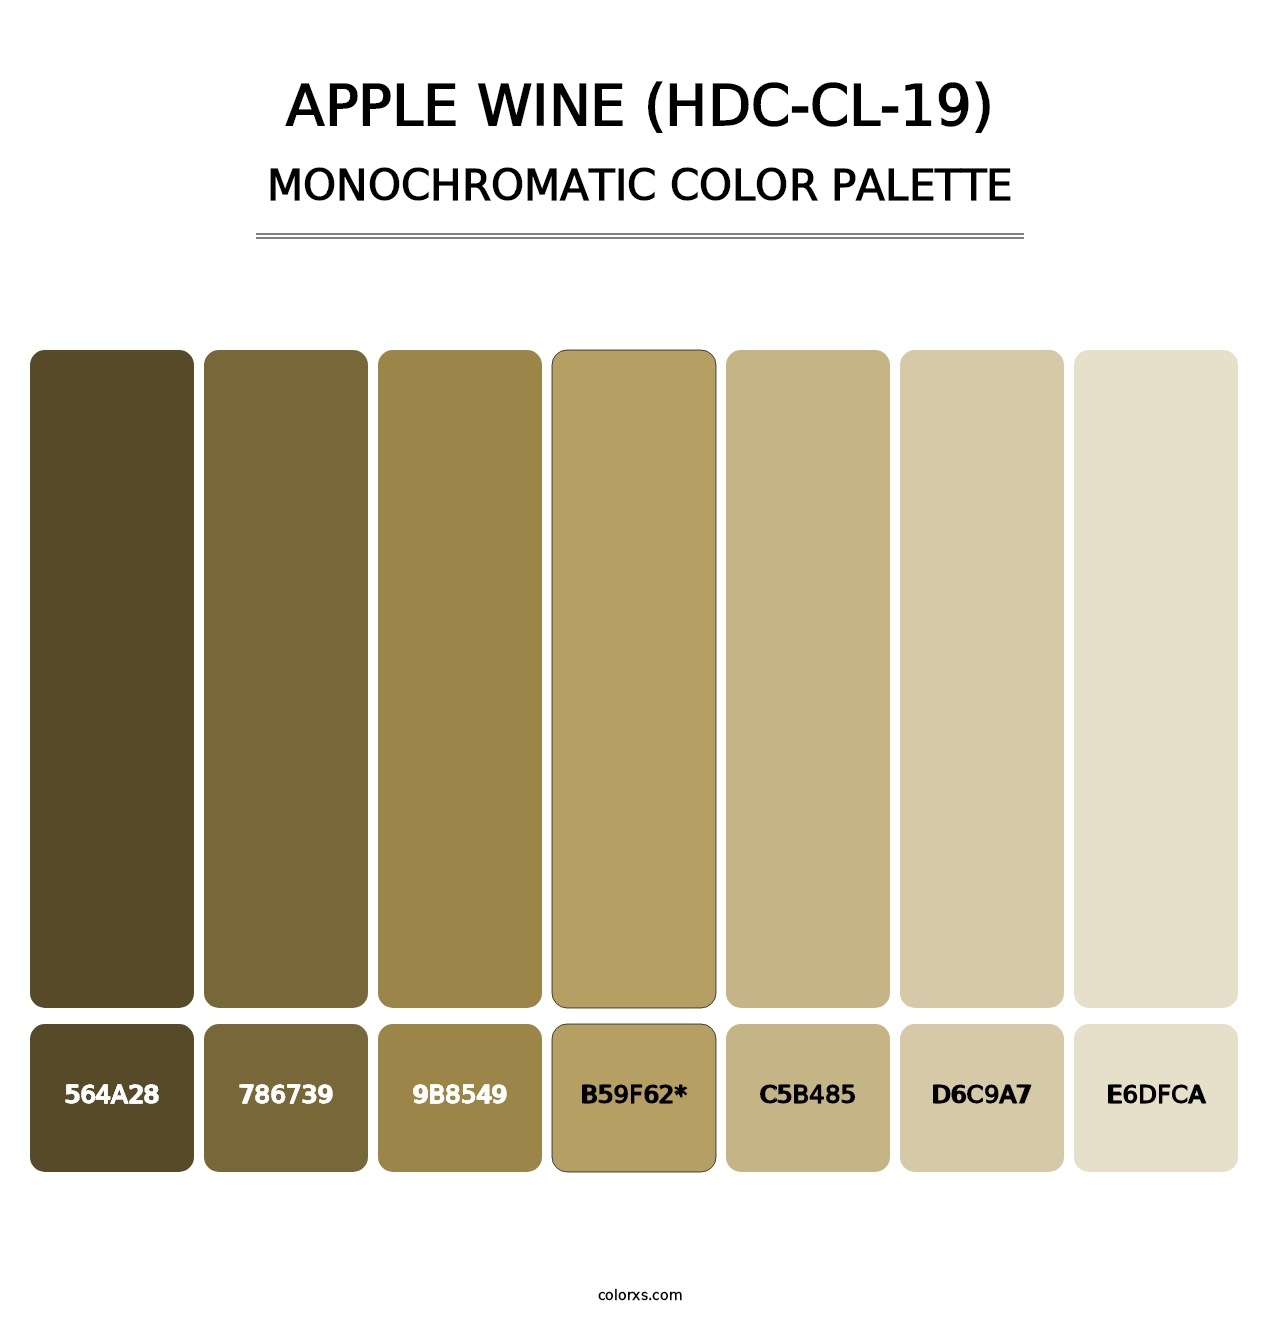 Apple Wine (HDC-CL-19) - Monochromatic Color Palette